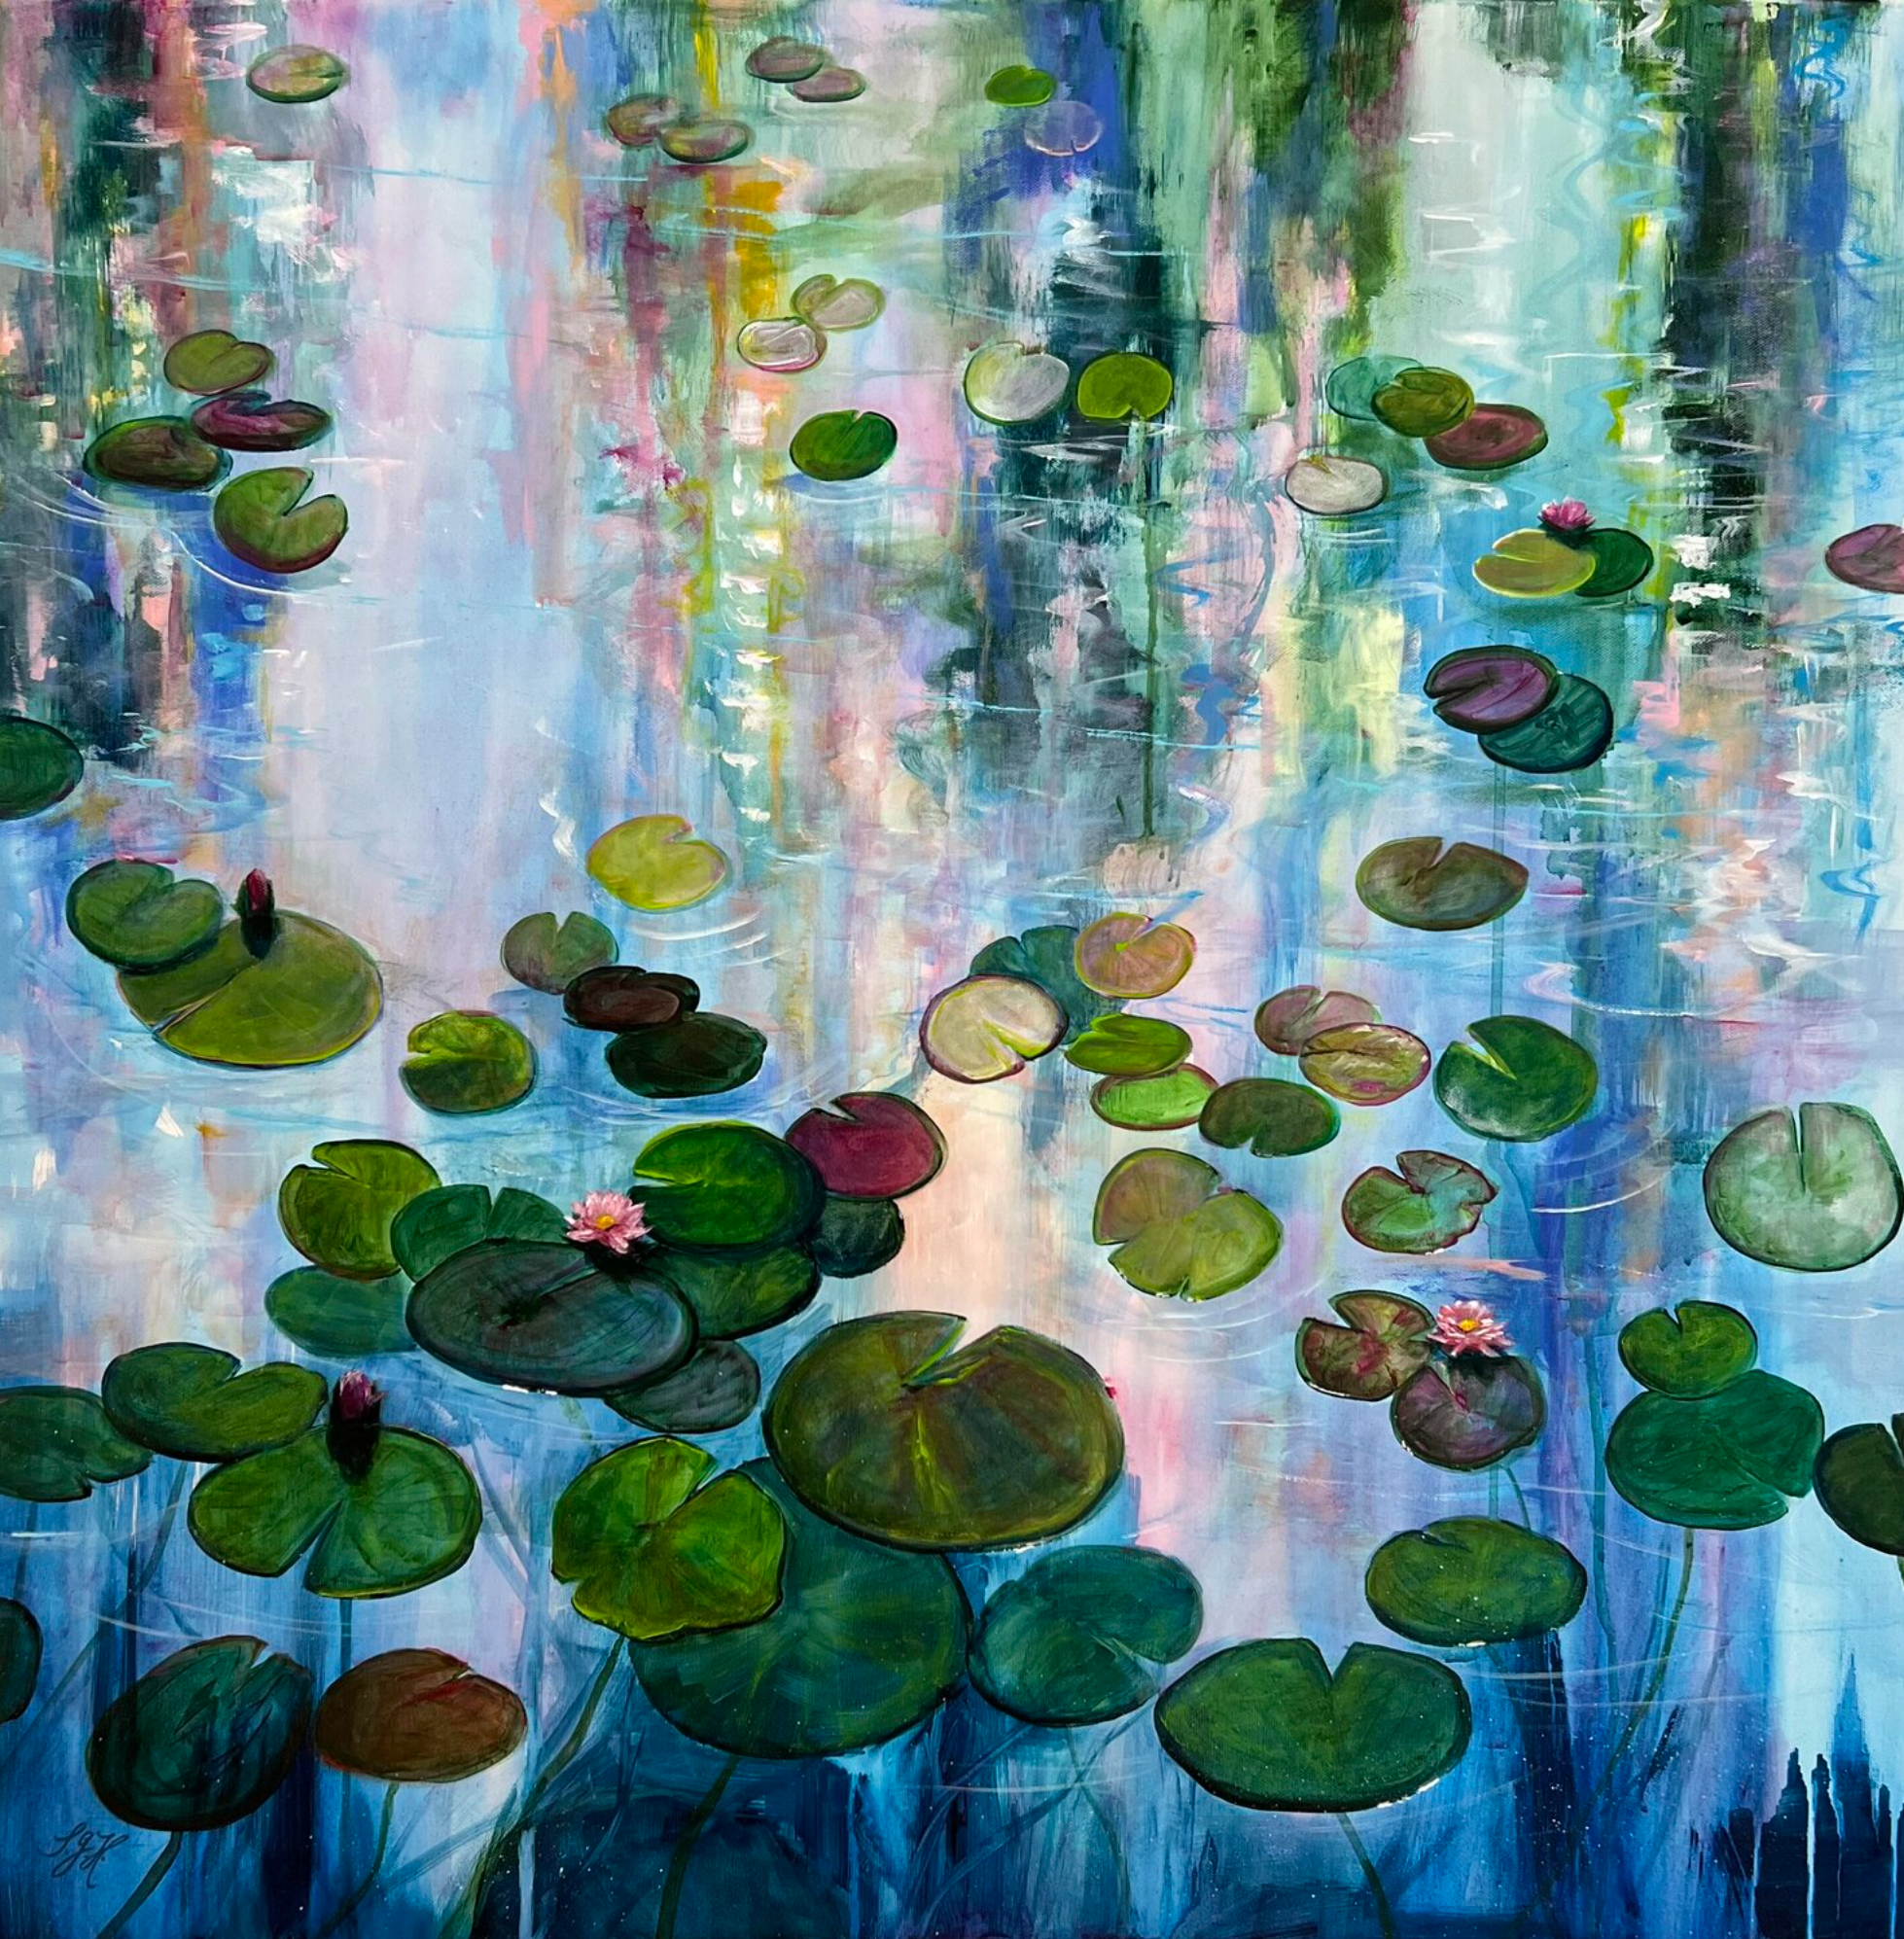 Sandra Gebhardt-Hoepfner的 "睡莲6 "彩色画作展示了睡莲的叶子放松地躺在阳光下的水中。背景中的树木和植物倒映在覆盖着睡莲的池塘中。颜色很明亮，有很多白色、浅蓝色、浅绿色和深绿色、浅粉色和深粉色以及浅橙色。